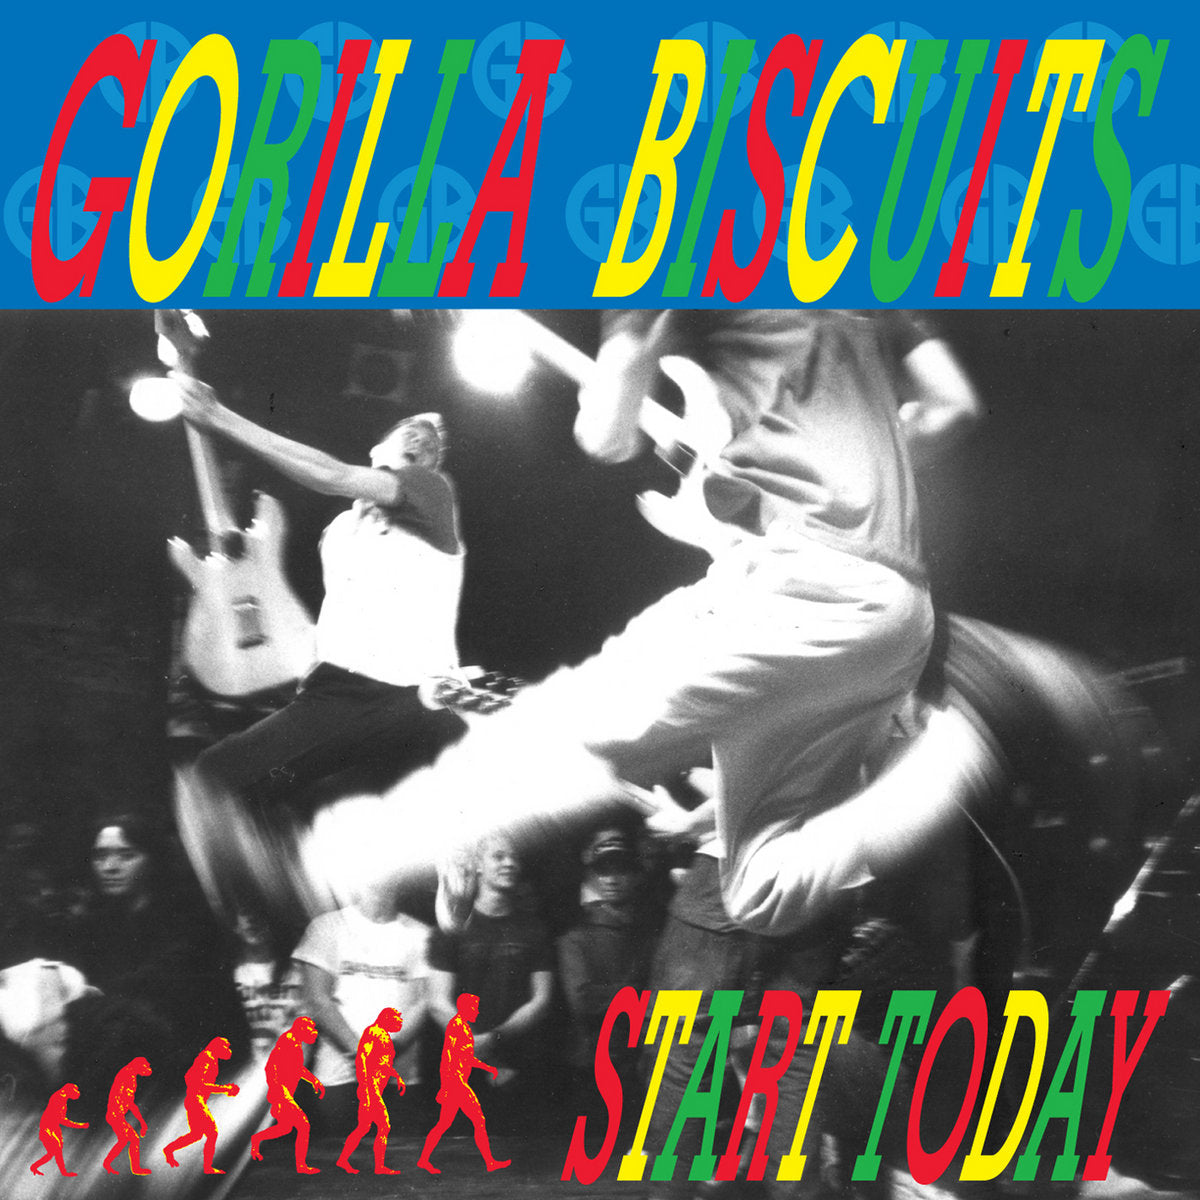 Gorilla Biscuits  "Start Today" LP